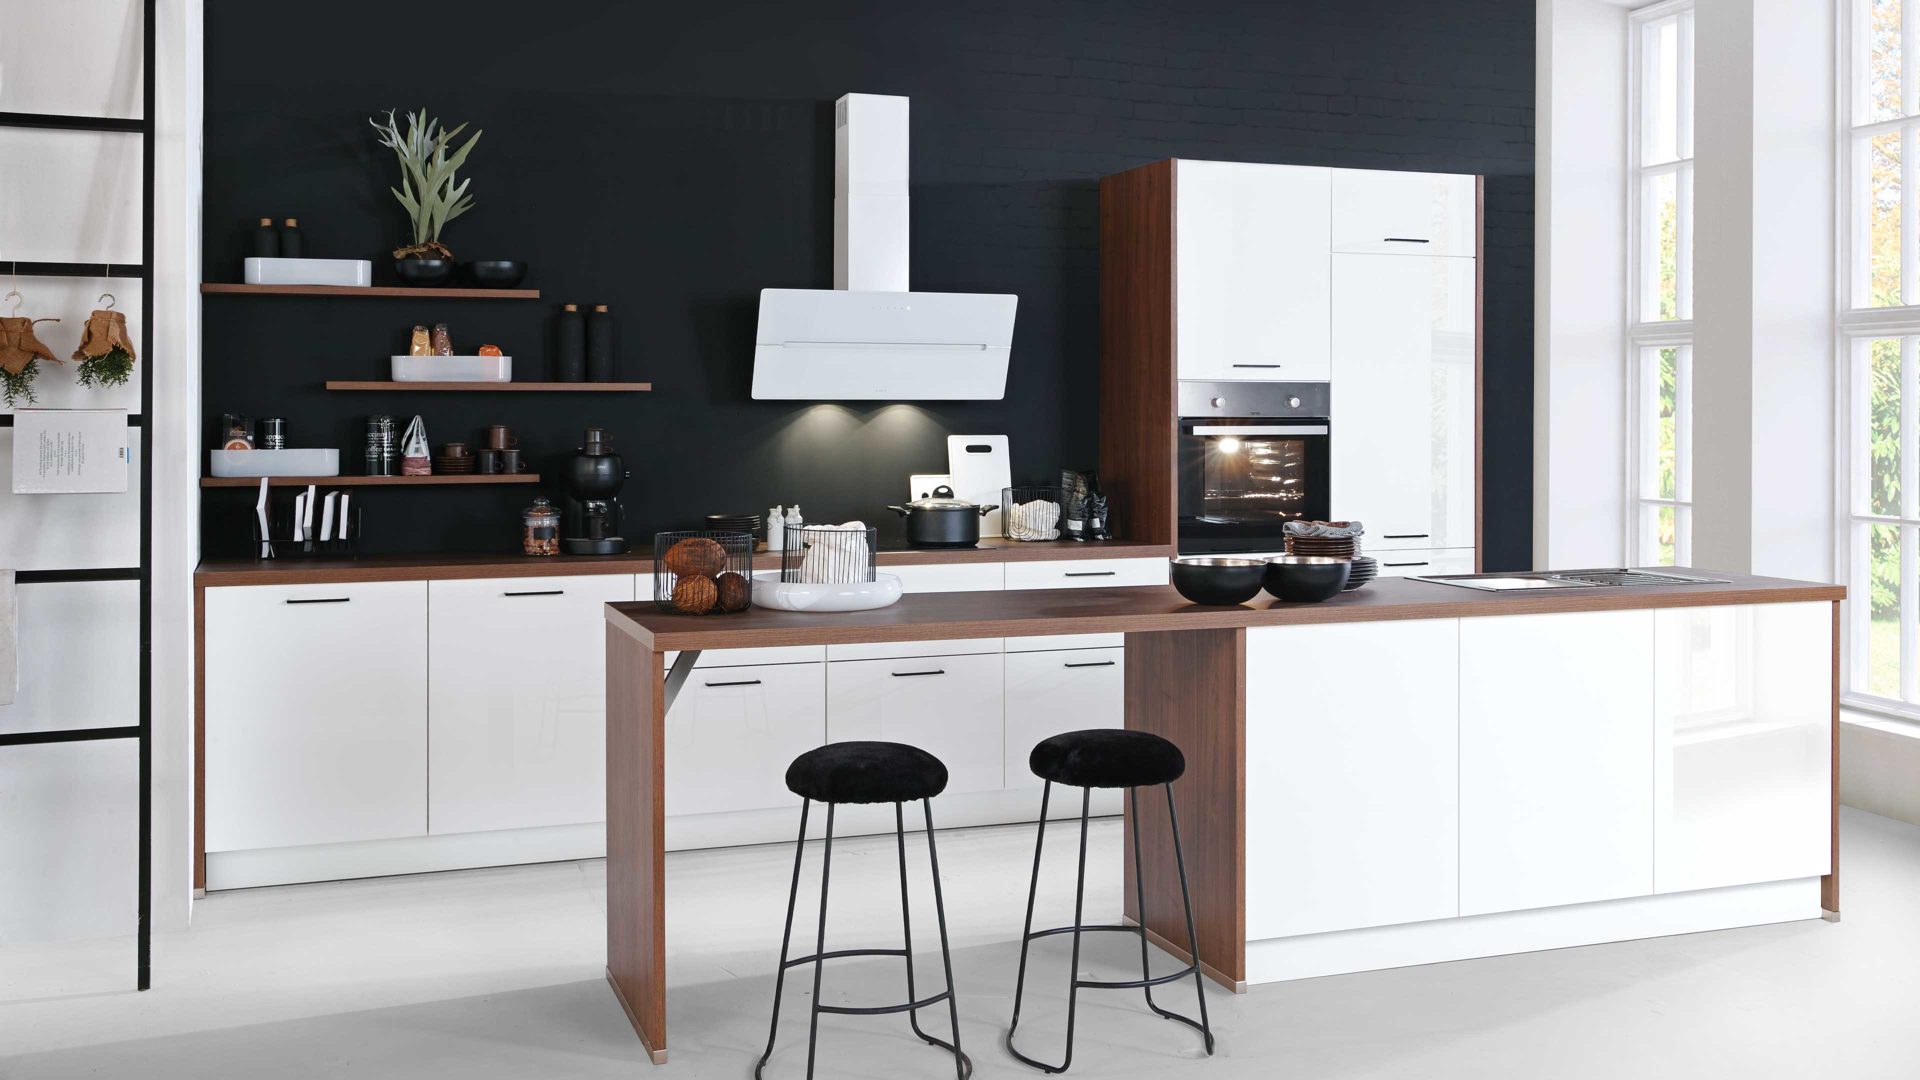 Einbauküche Express küchen aus Holz in Holzfarben EXPRESS KÜCHEN Einbauküche Star mit Geräten Weiß & Eiche braungrau - zweizeilig